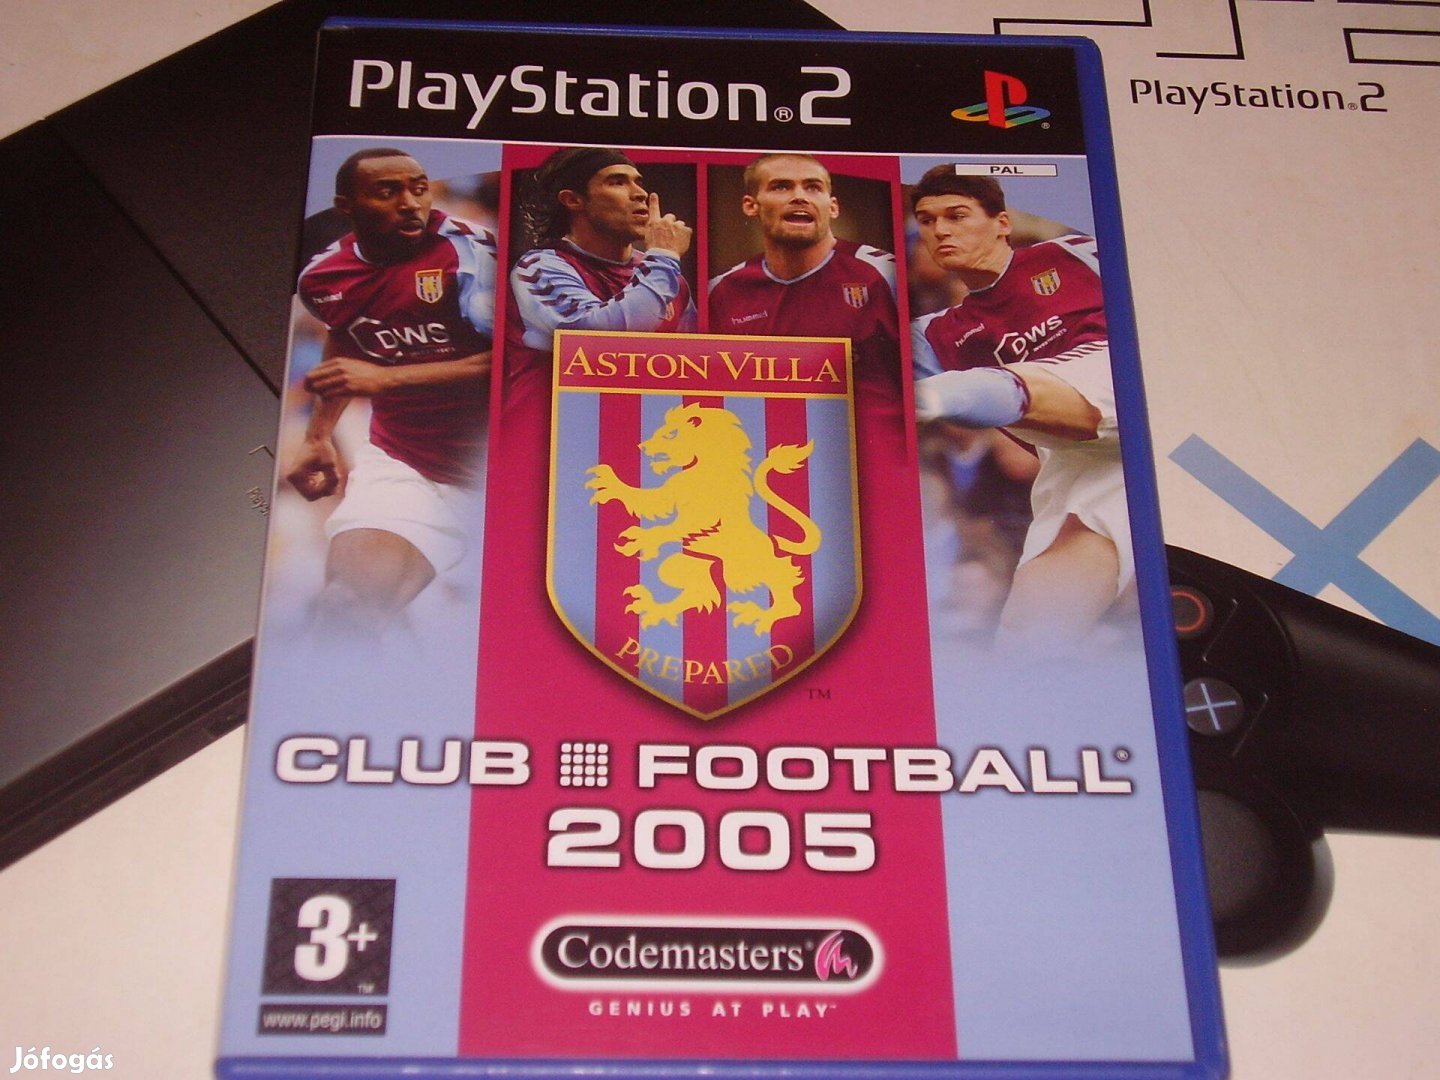 Aston Villa Club Football Playstation 2 eredeti lemez eladó